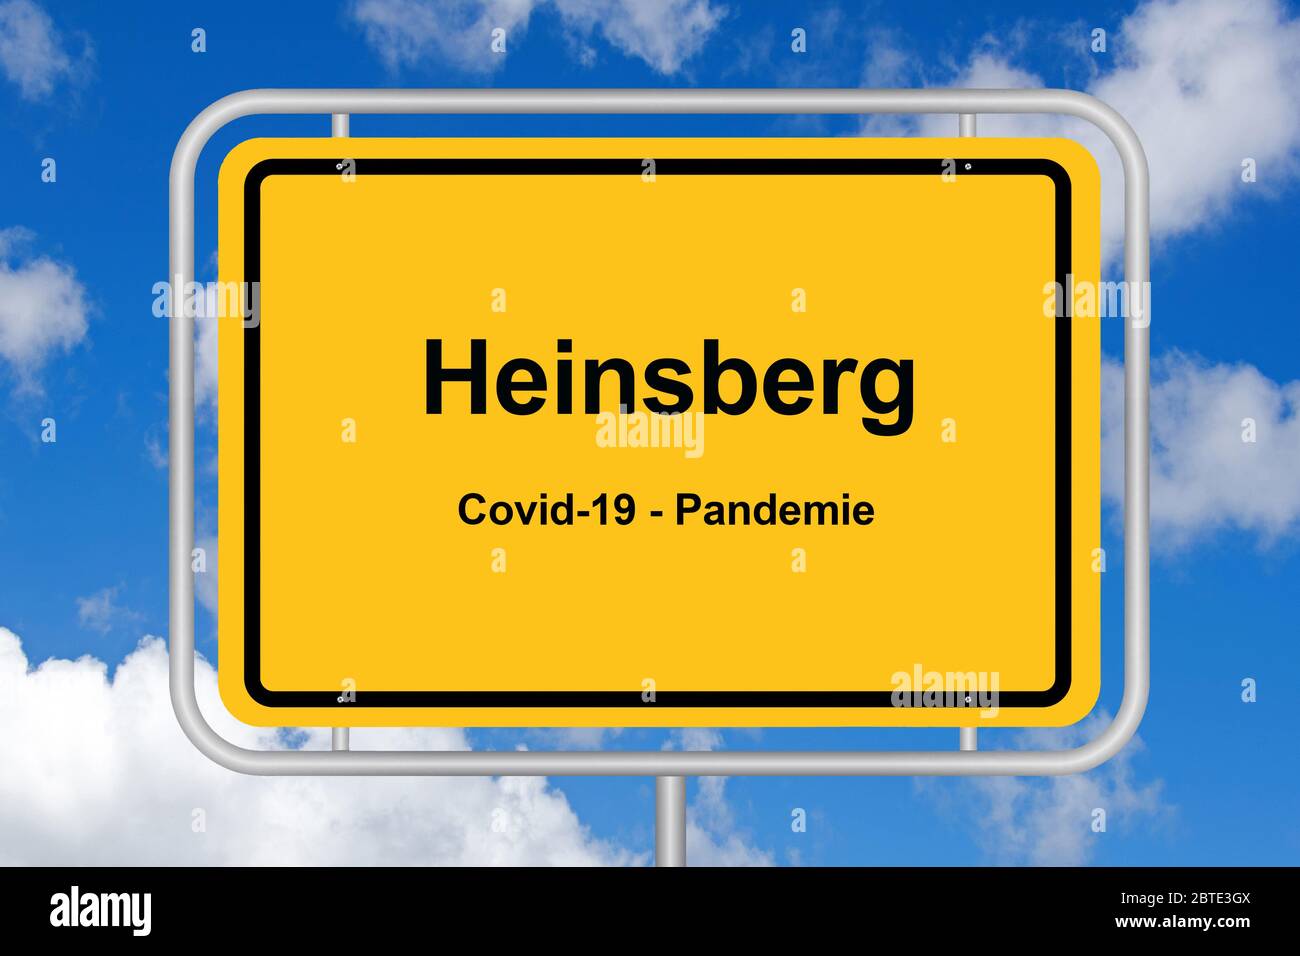 Ciudad de Heinsberg, COVID19, pandemia, centro de corona, Alemania Foto de stock